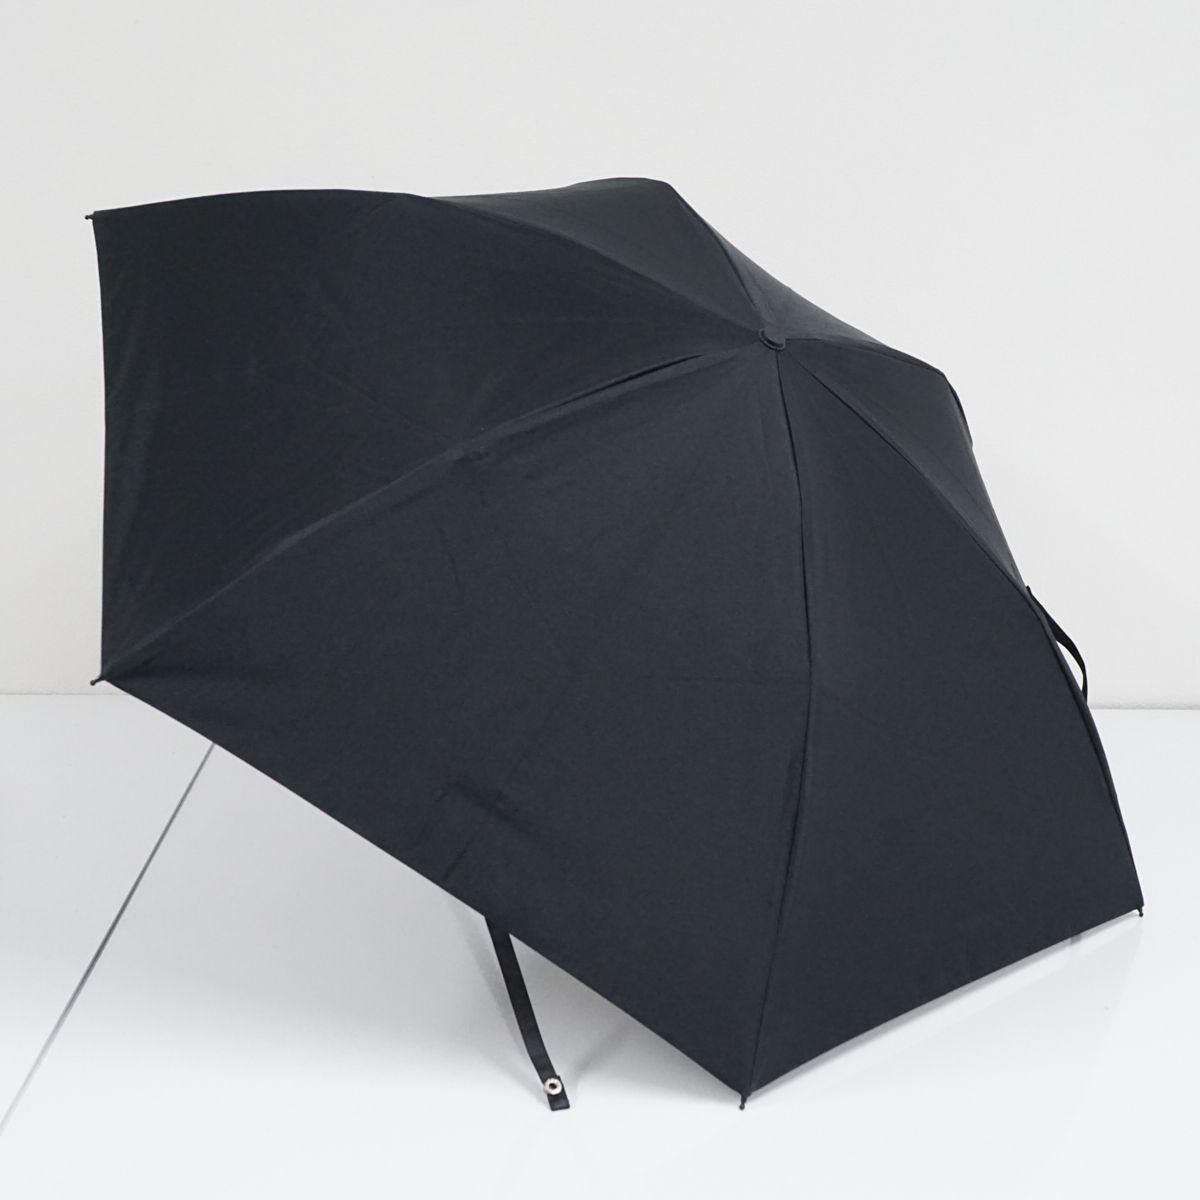 サンバリア100 完全遮光折日傘 USED美品 2段折 コンパクト ブラック 黒